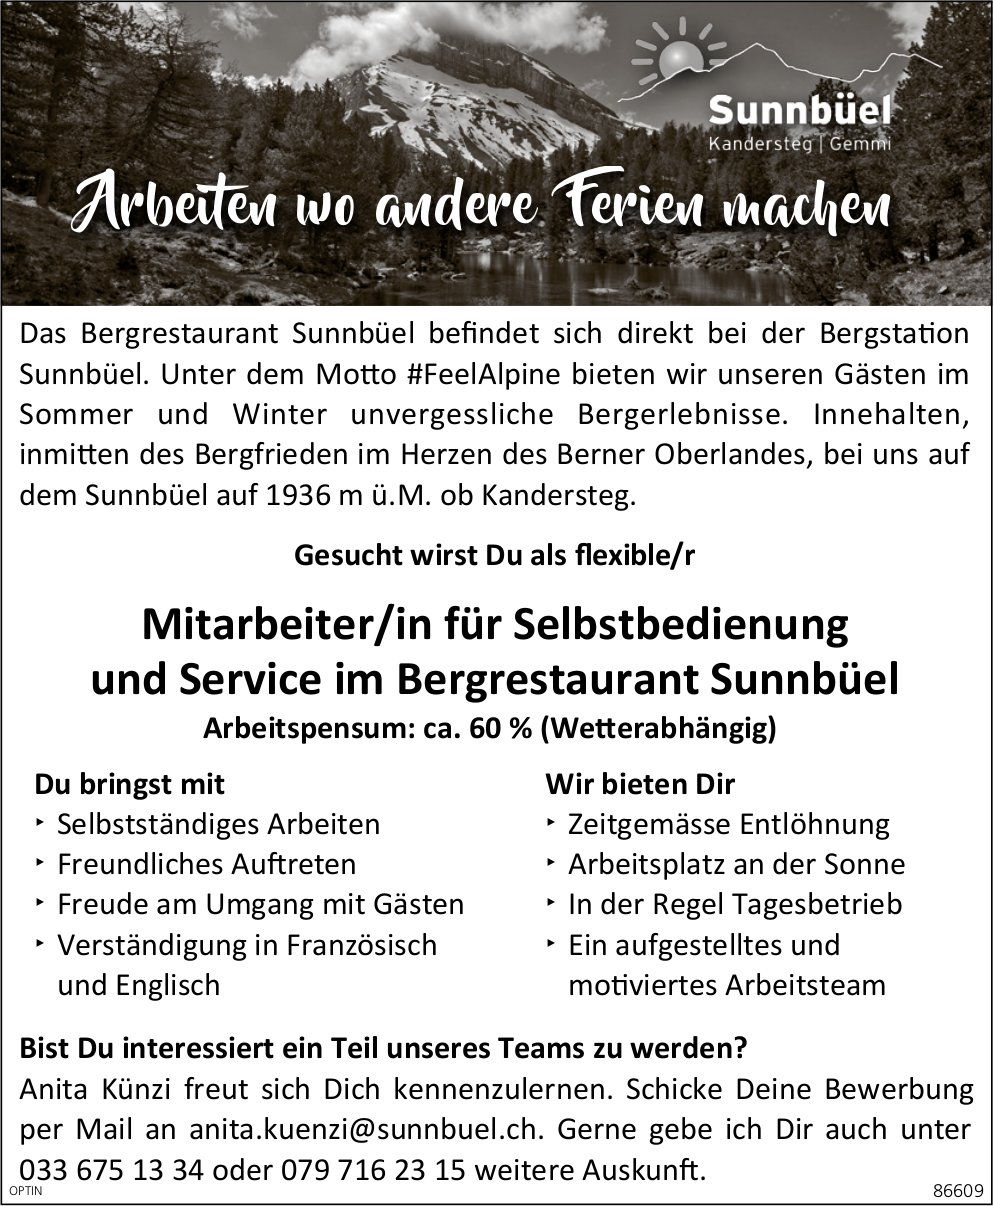 Mitarbeiter/in für Selbstbedienung und Service, Bergrestaurant Sunnebüel, Kandersteg, gesucht